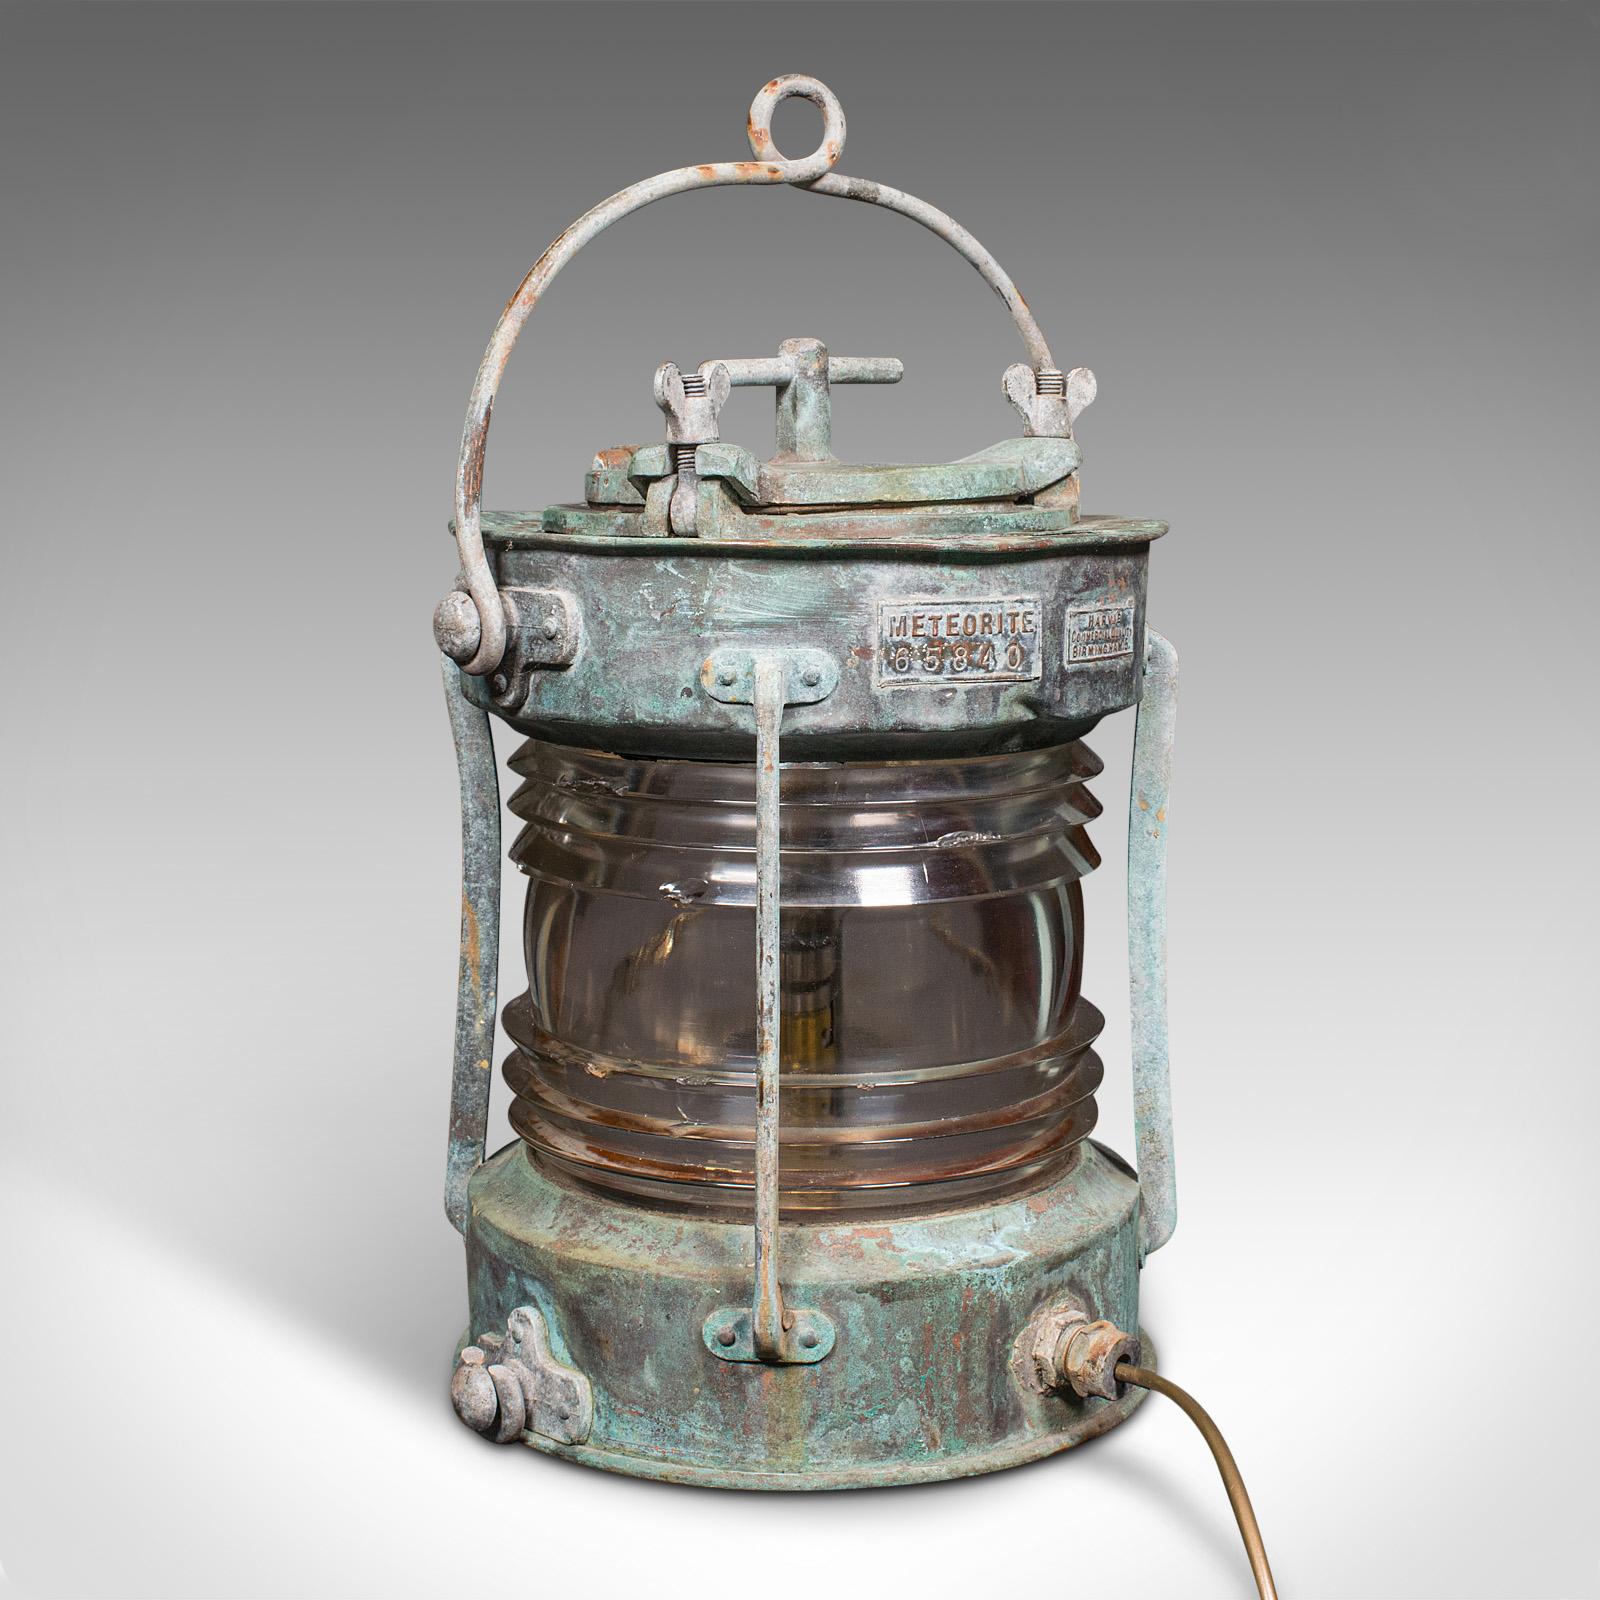 Il s'agit d'une ancienne lampe à ancre de bateau. Lampe maritime anglaise en bronze lourd et verre, datant de la période édouardienne, vers 1910.

Un nautisme saisissant, avec un superbe aspect usé par les intempéries
Présente une patine d'usage